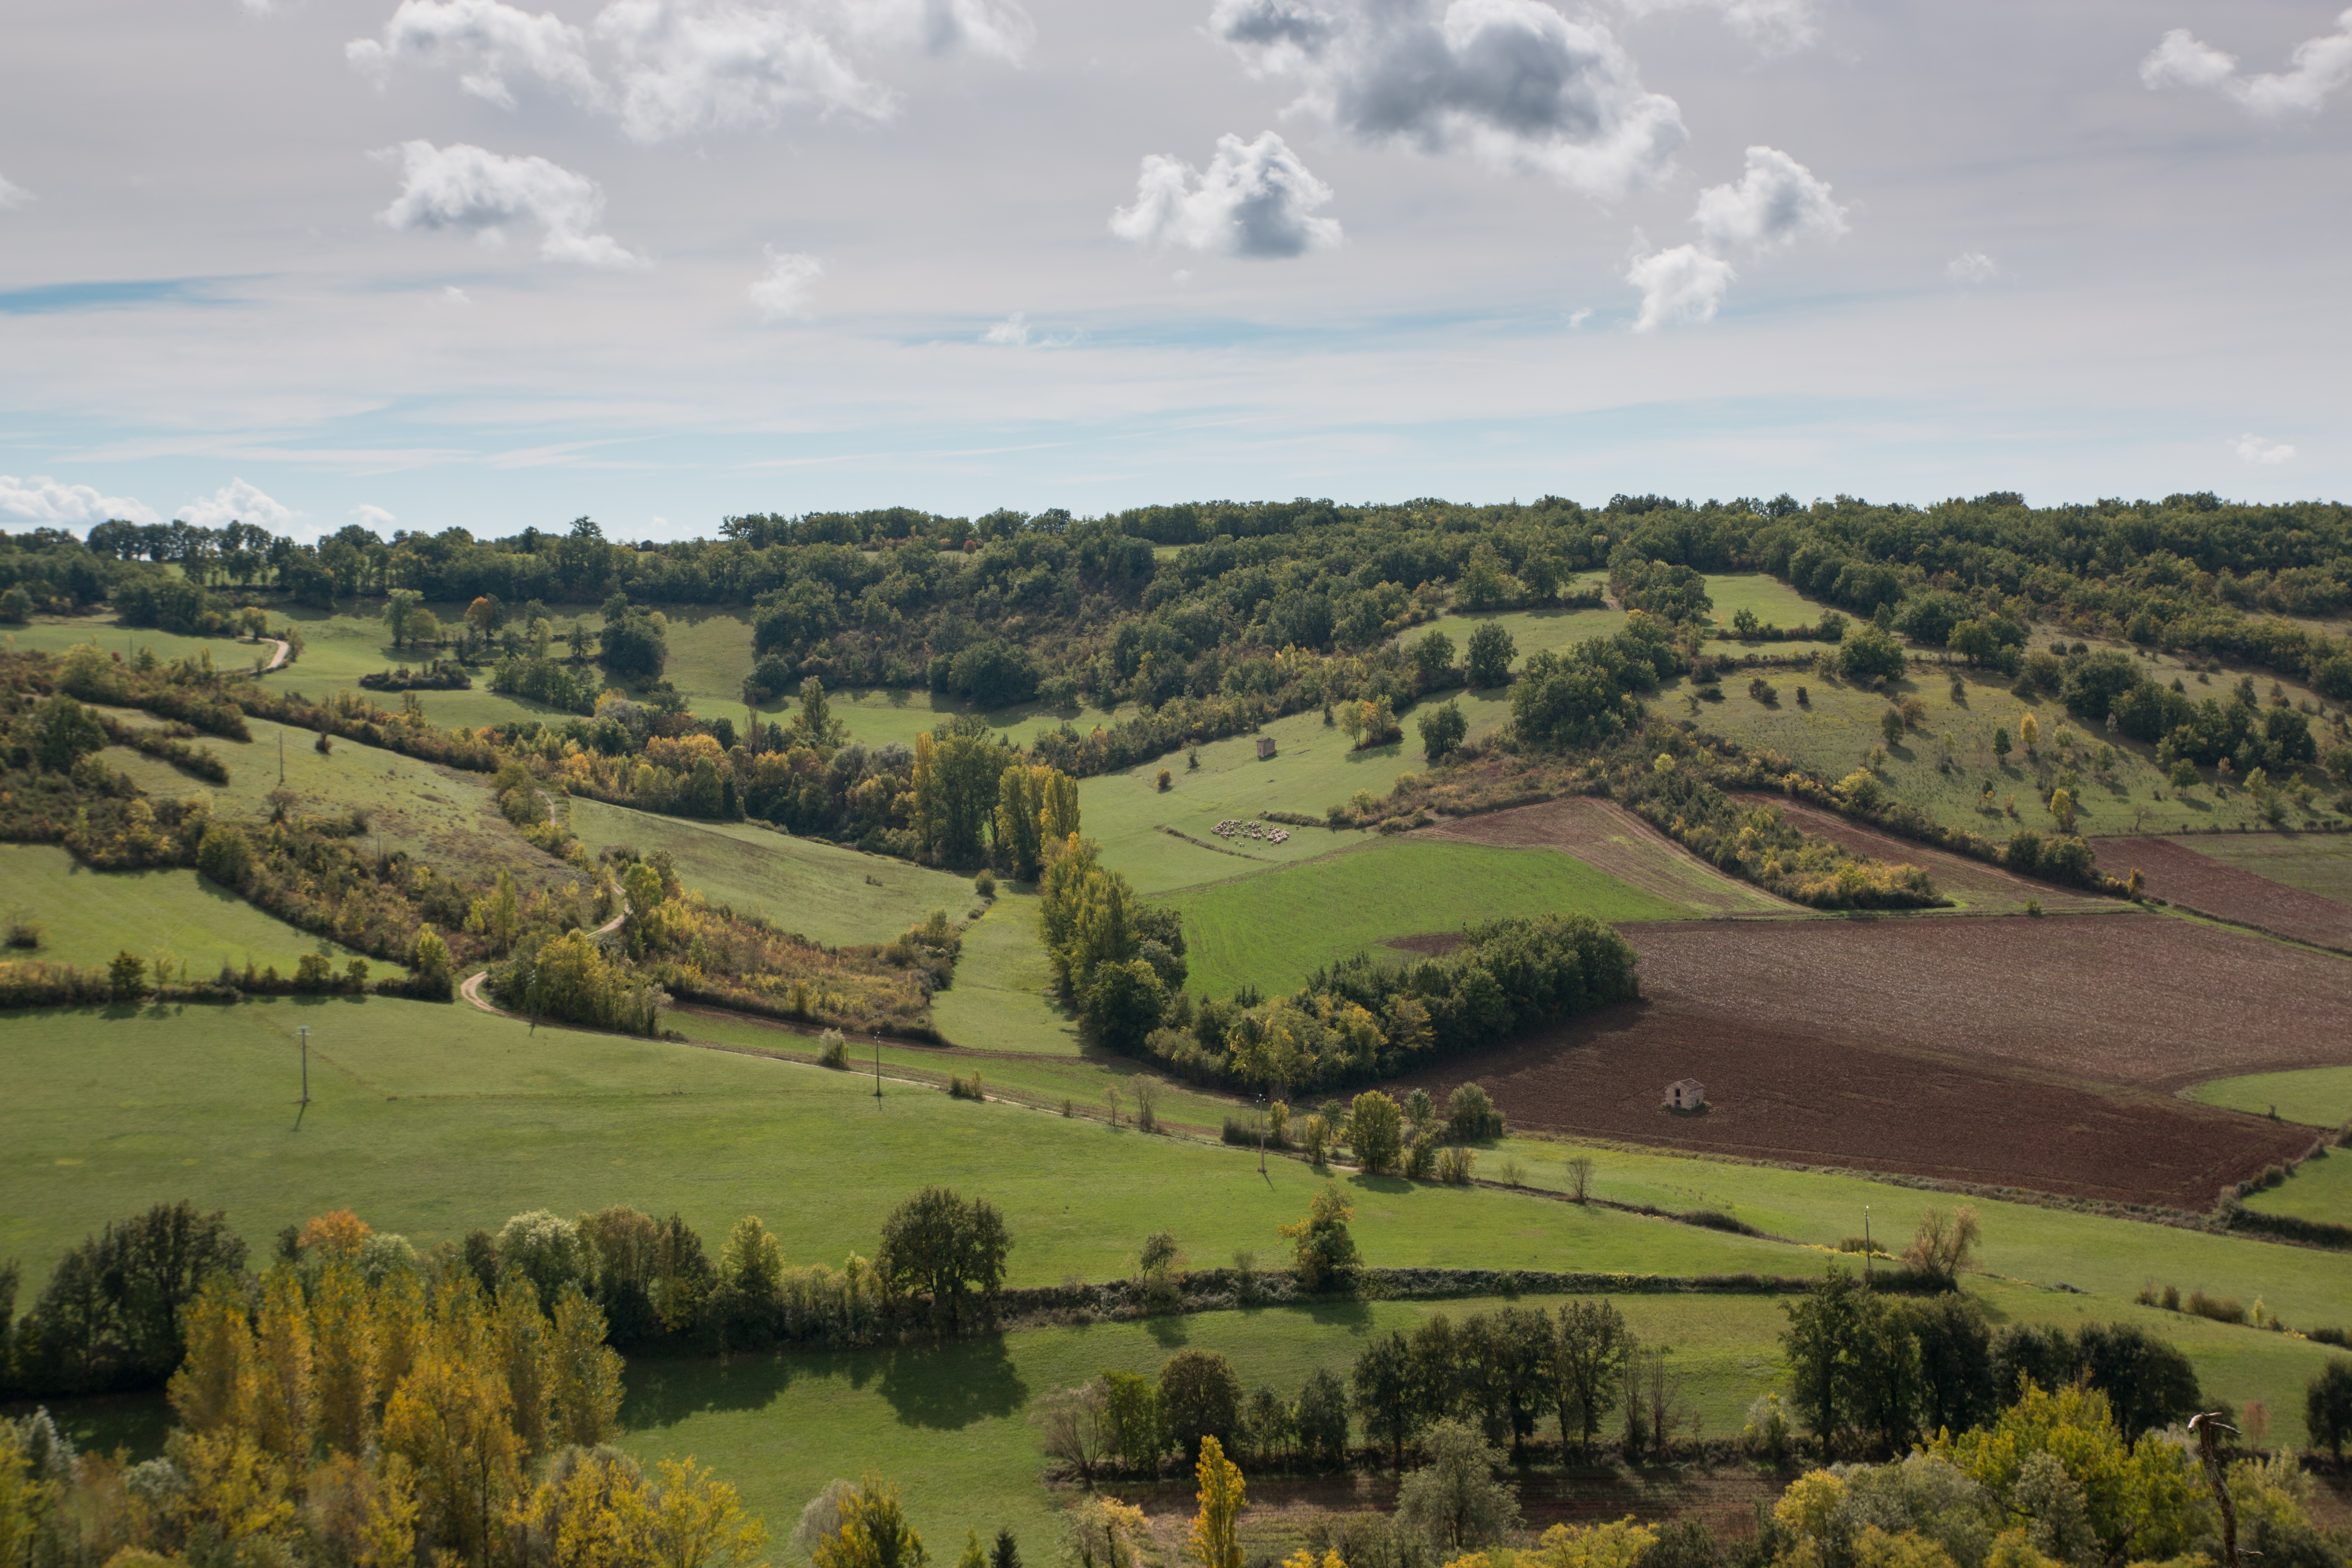 L'agroécologie, un modèle agricole qui vise à préserver les ressources naturelles. © B. Piccoli, Adobe Stock